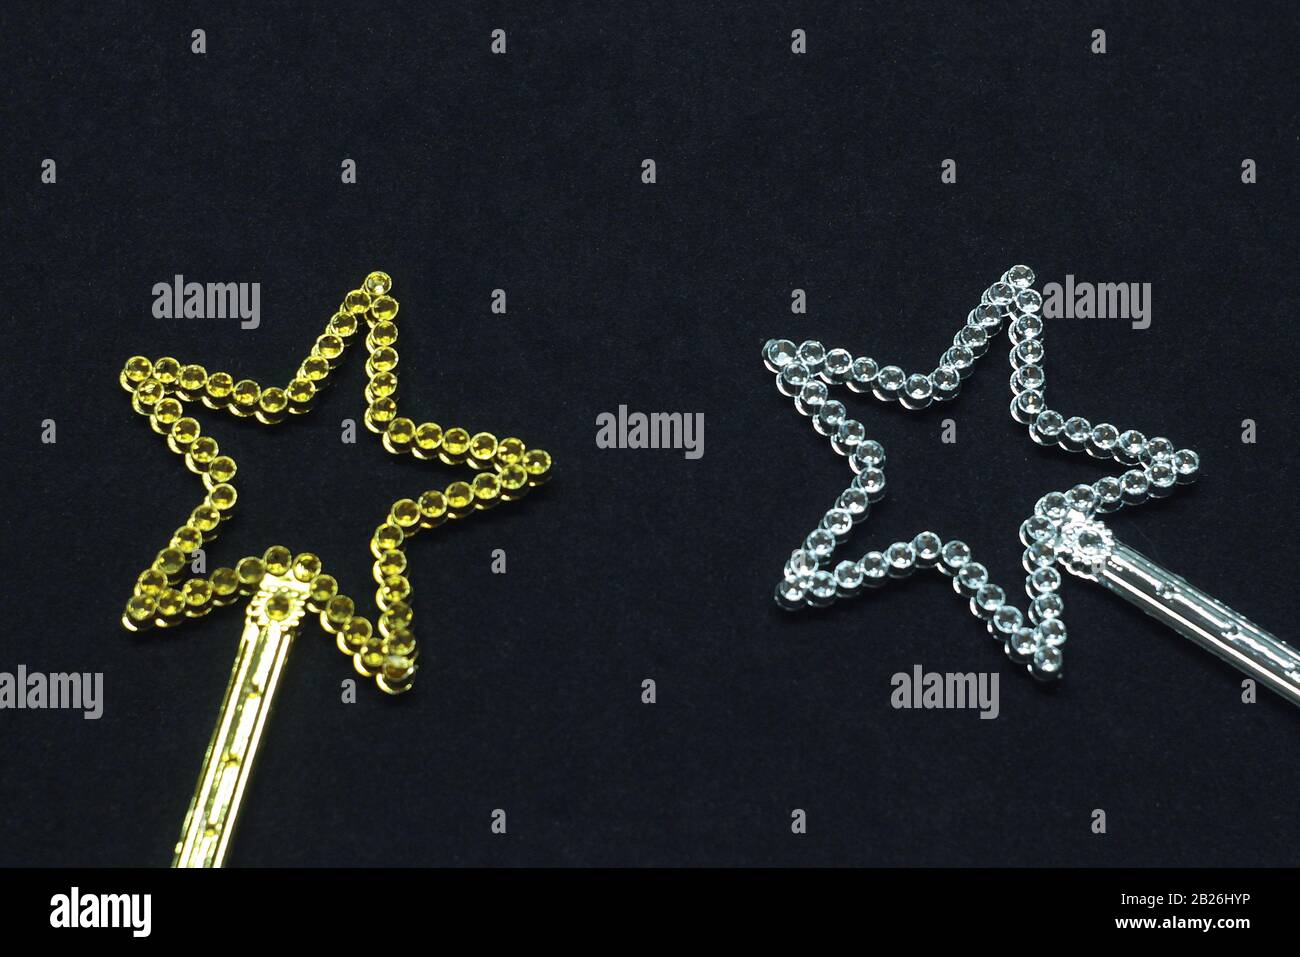 Zwei magische Wanden in goldener und silberner Farbe mit einem Stern oben mit Glitzersteinchen. Spielzeug für Kinder aus Kunststoff auf schwarzem Hintergrund. Stock-Foto für Webdruck, zurück Stockfoto